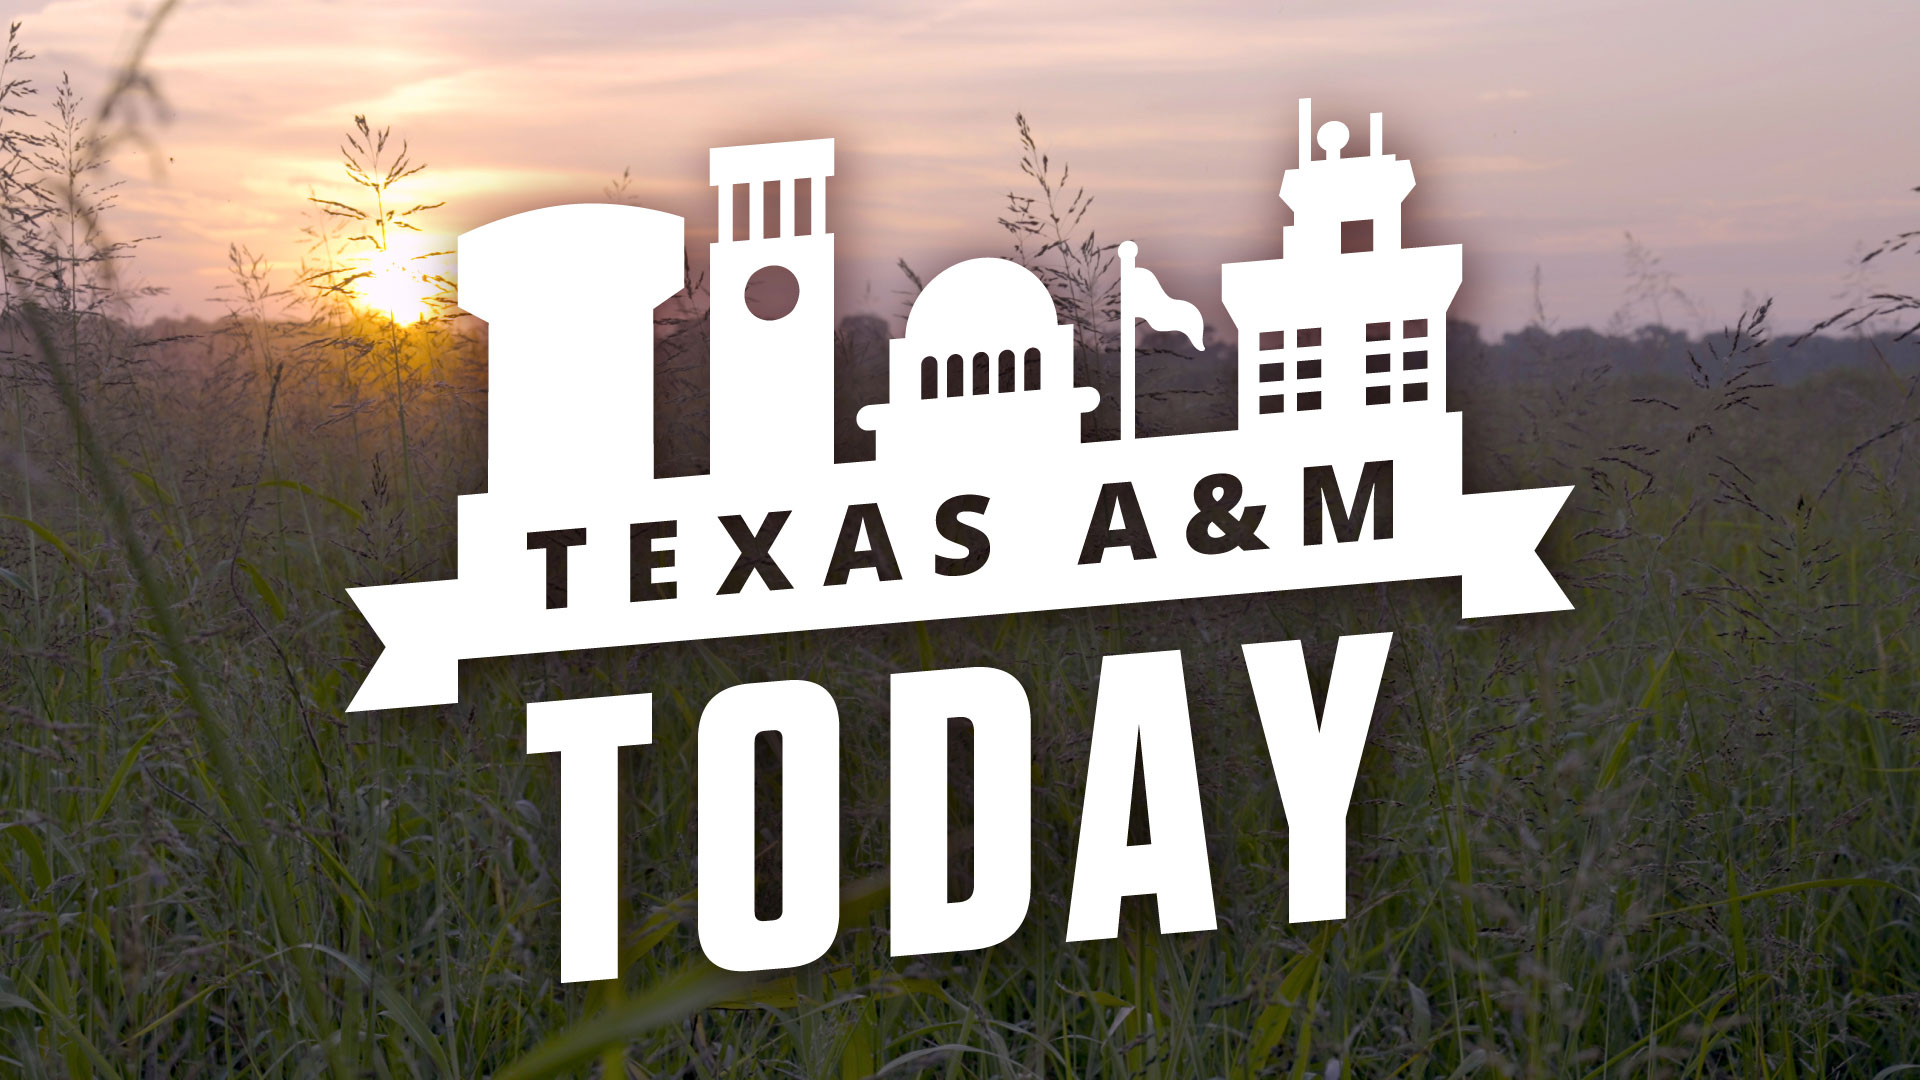 Texas A&M Today logo over a farm field